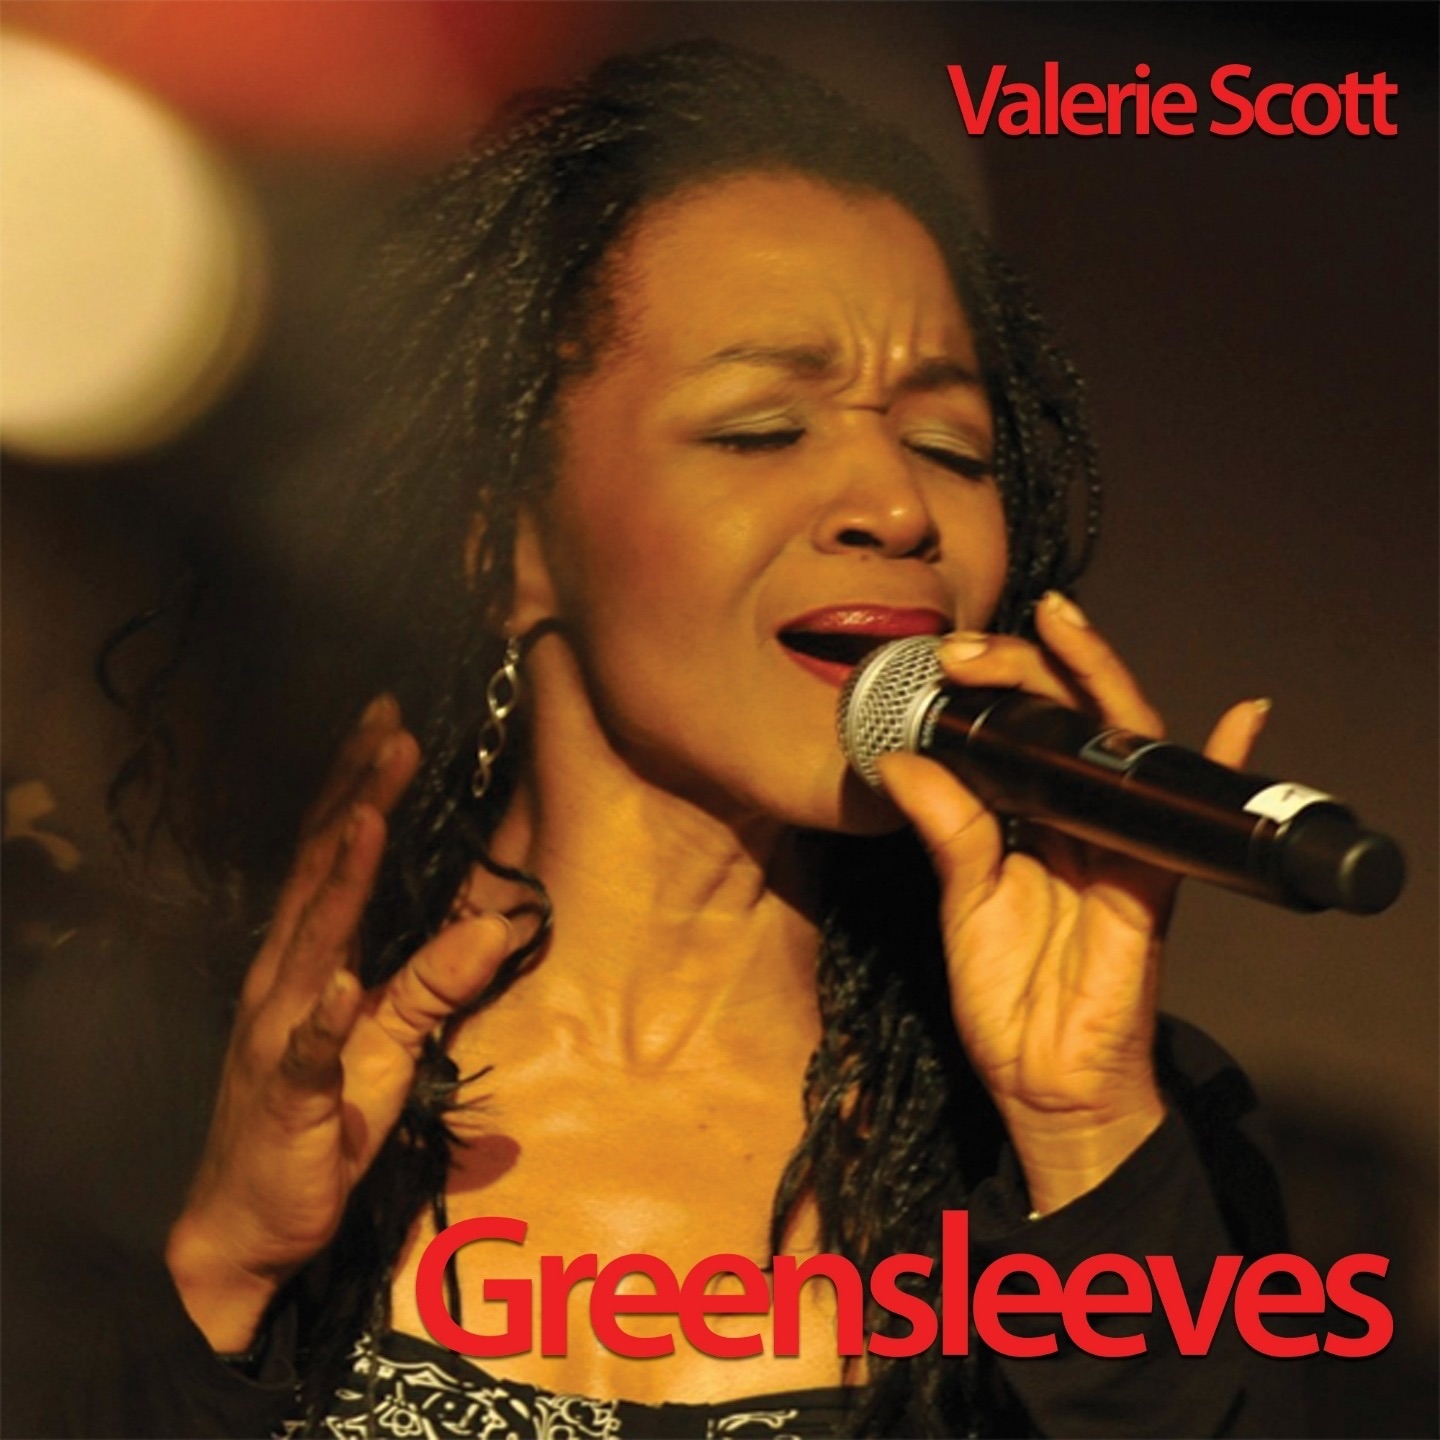 „Greensleves - Single“ von Valerie Scott & Martin Ernst in iTunes